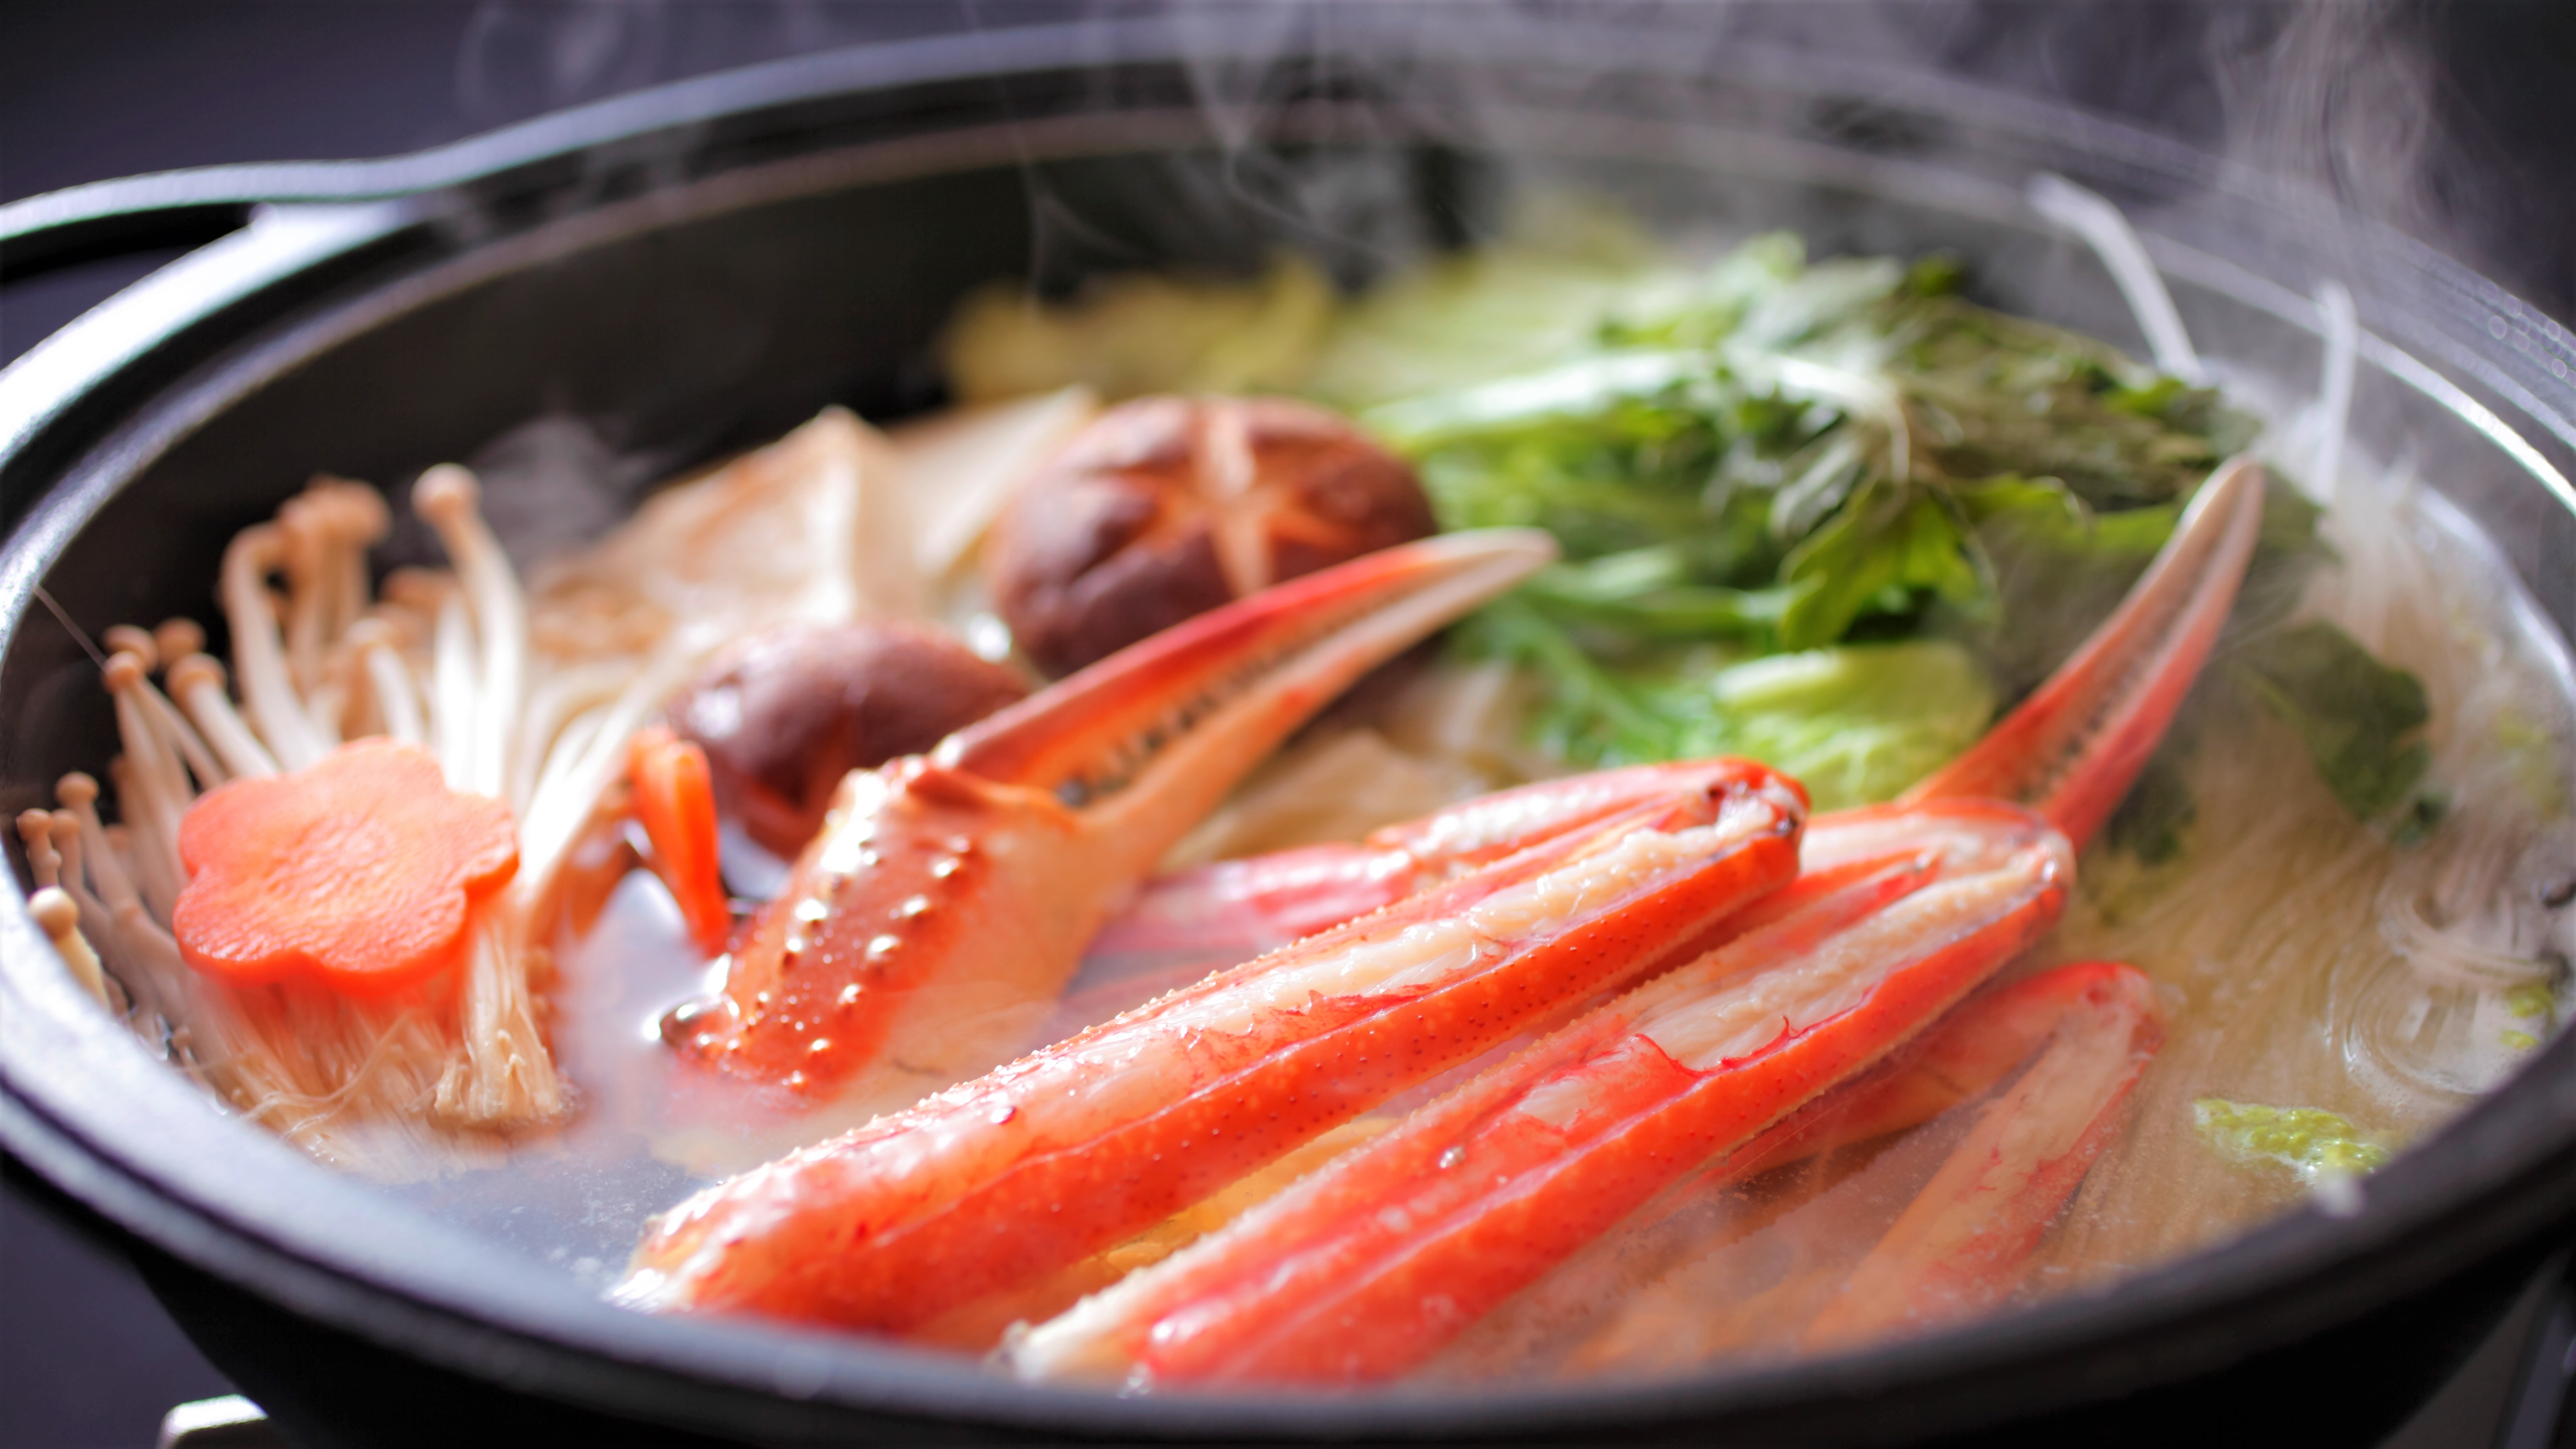 【カニすき鍋】冬の定番カニすき鍋は当館自家製のポン酢でどうぞ♪